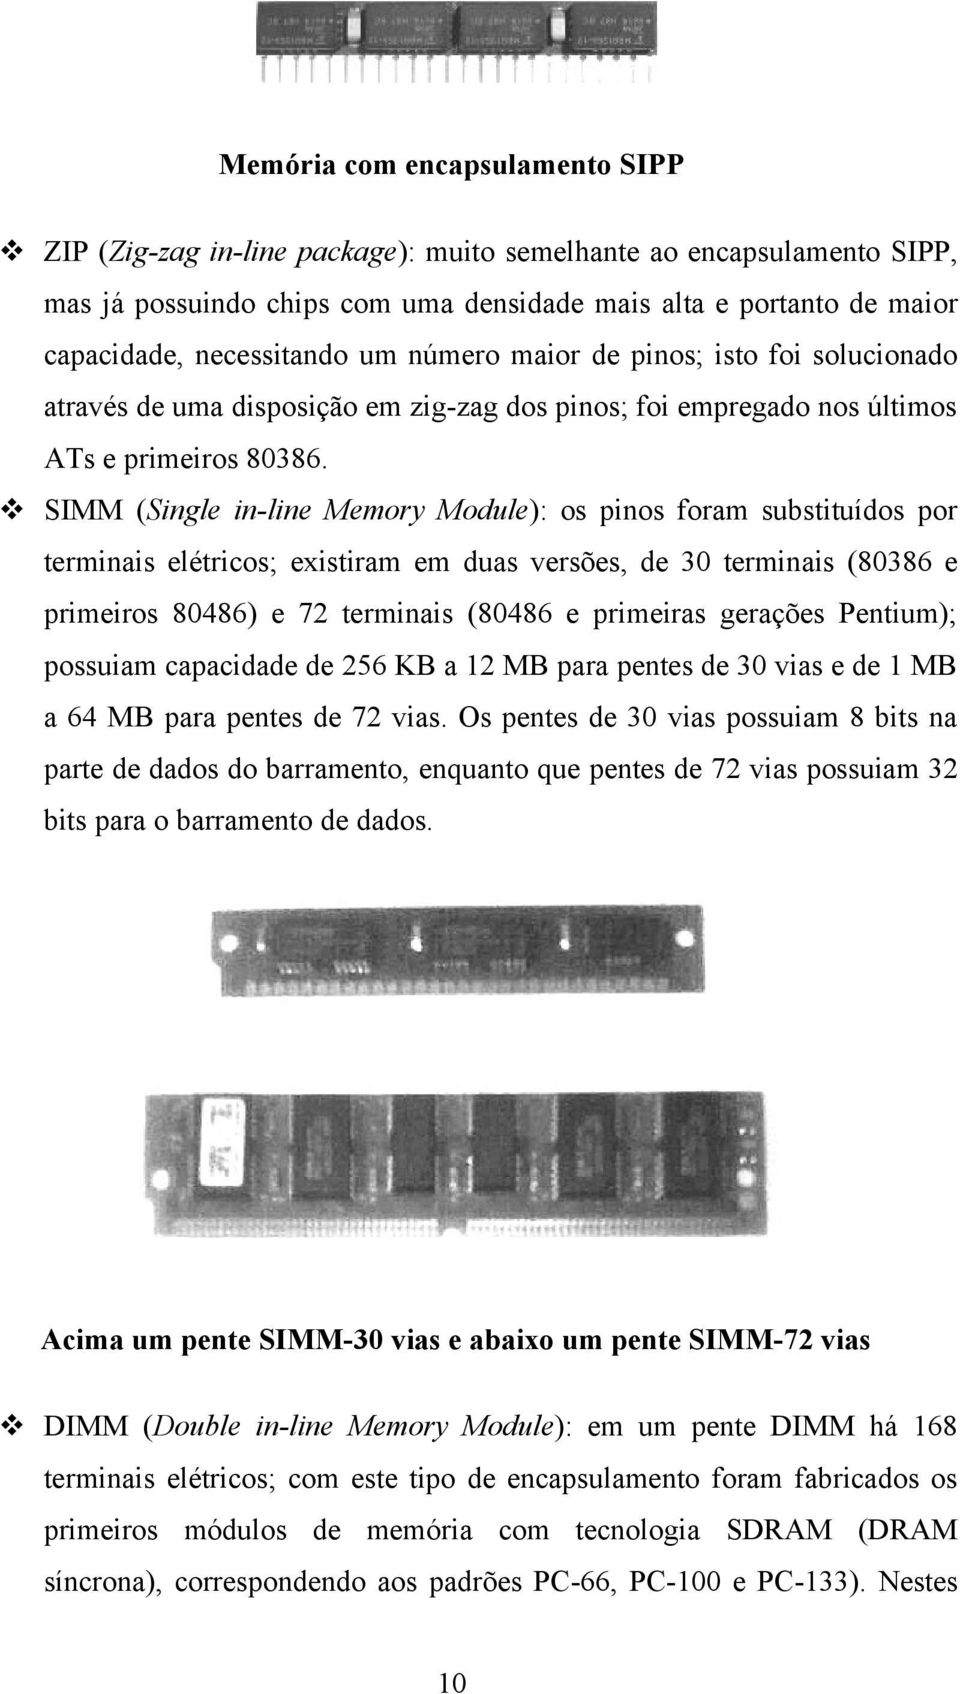 SIMM (Single in-line Memory Module): os pinos foram substituídos por terminais elétricos; existiram em duas versões, de 30 terminais (80386 e primeiros 80486) e 72 terminais (80486 e primeiras